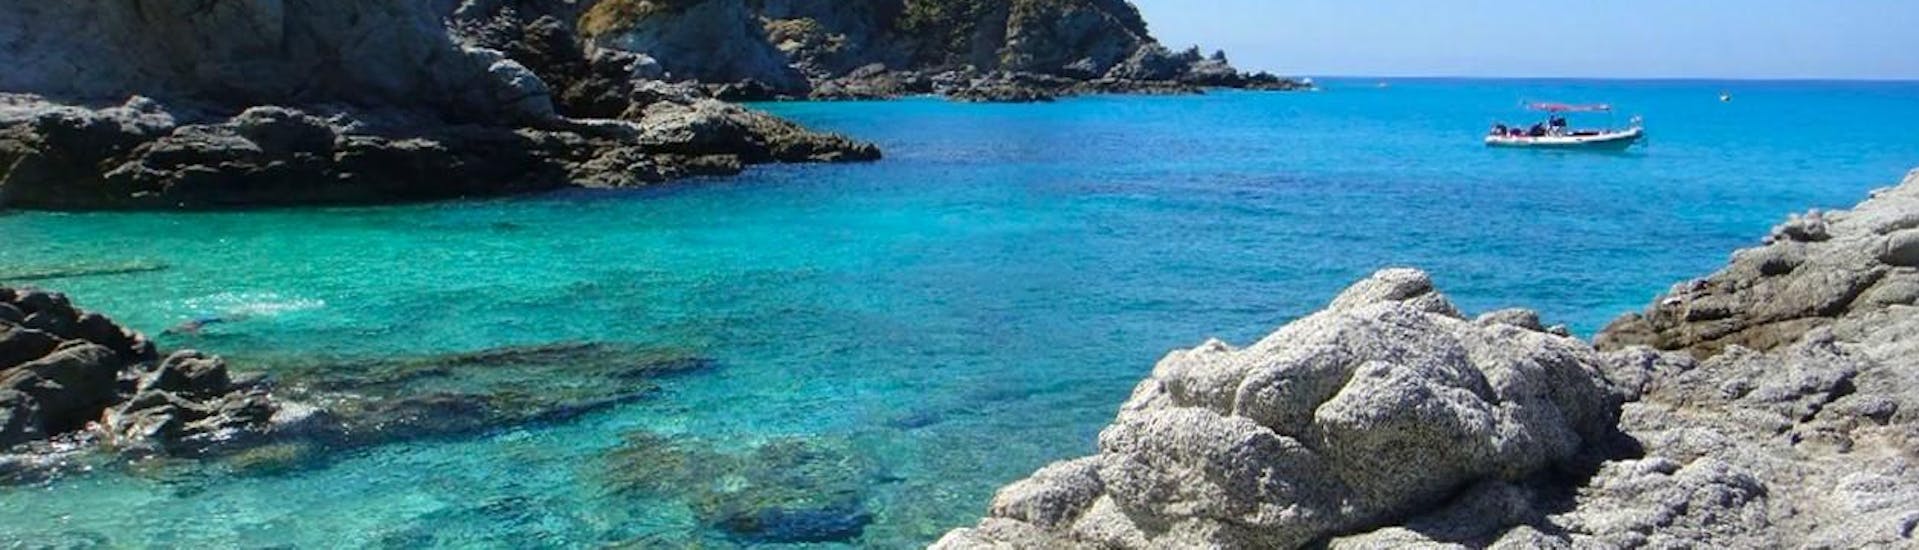 Le acque color smeraldo della Calabria che potete ammirare durante il Giro in gommone da Tropea lungo la Costa degli Dei.